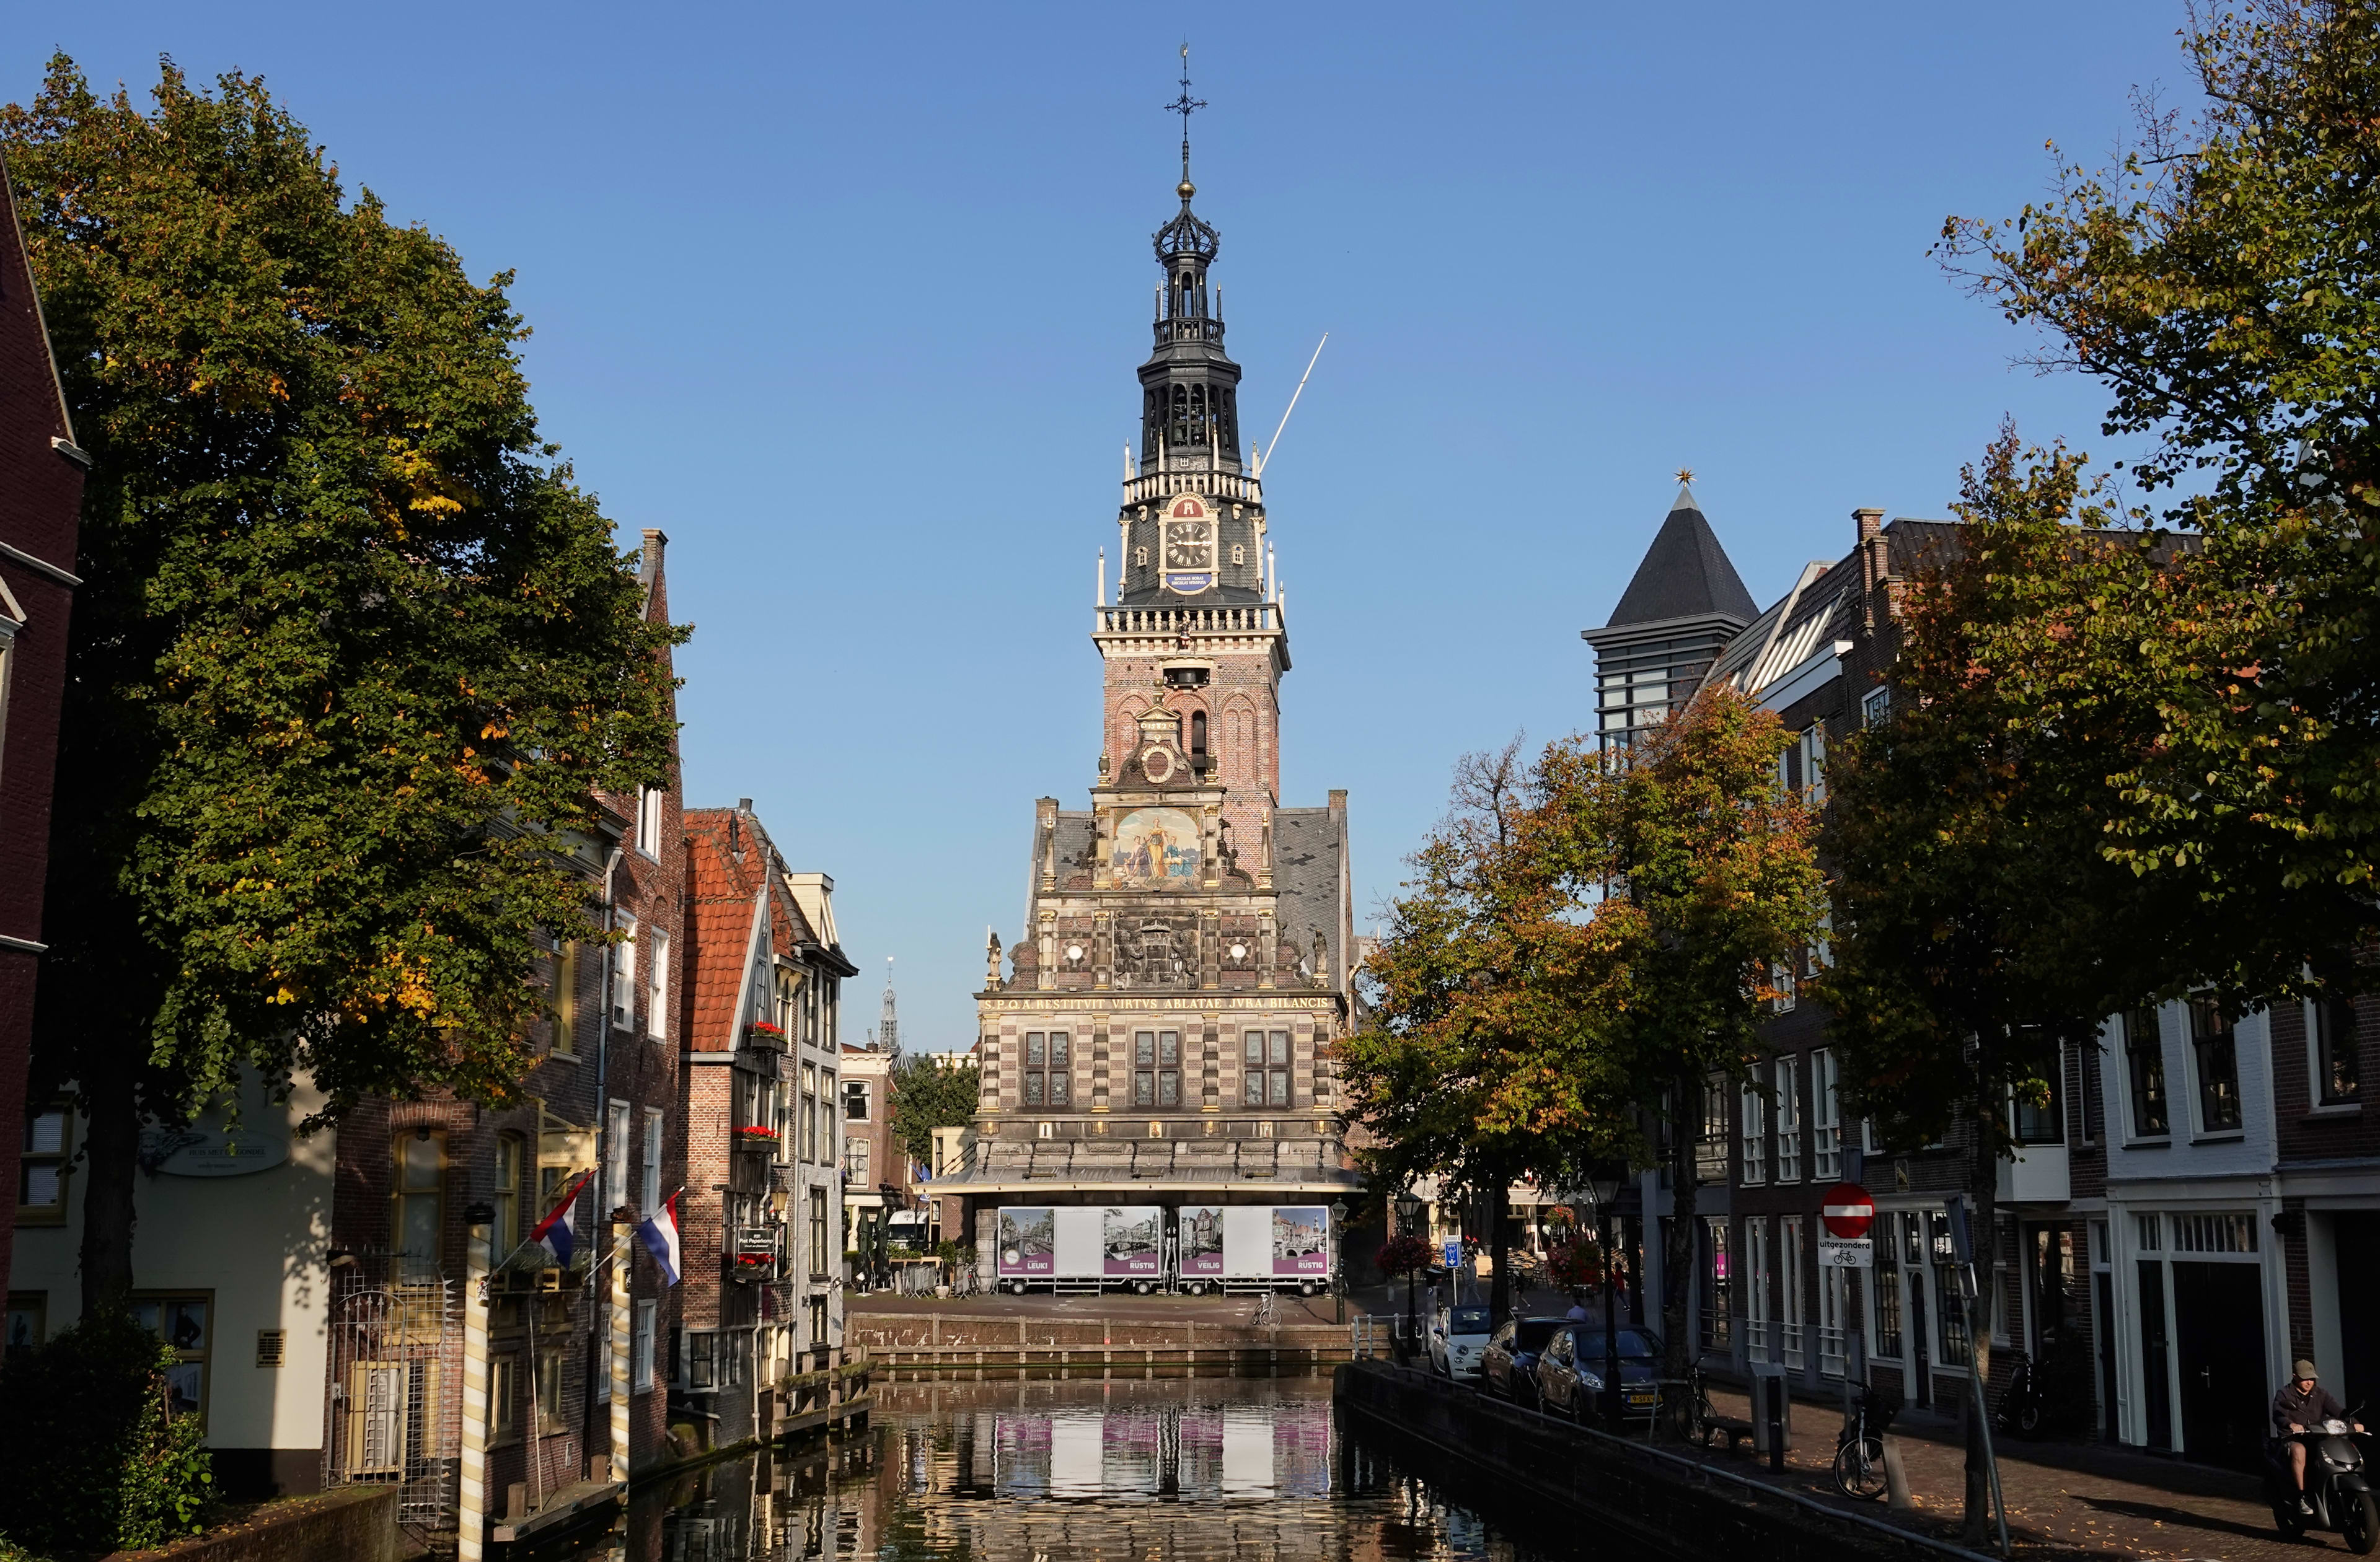 Weer 12 vrouwen betast in Alkmaar, totaal nu bijna op zestig meldingen